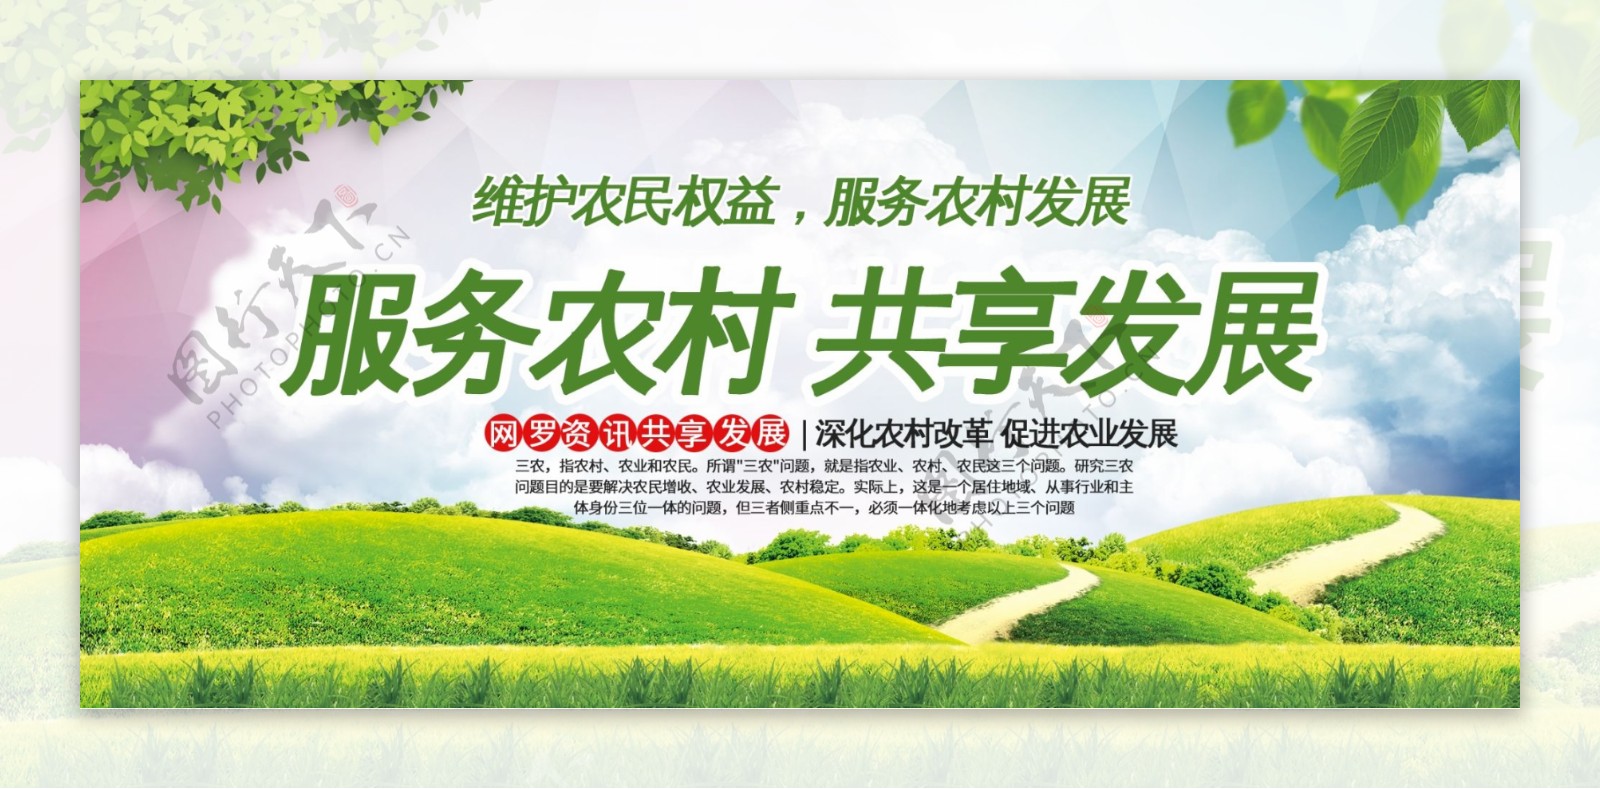 清新绿色服务农村共享发展三农展板